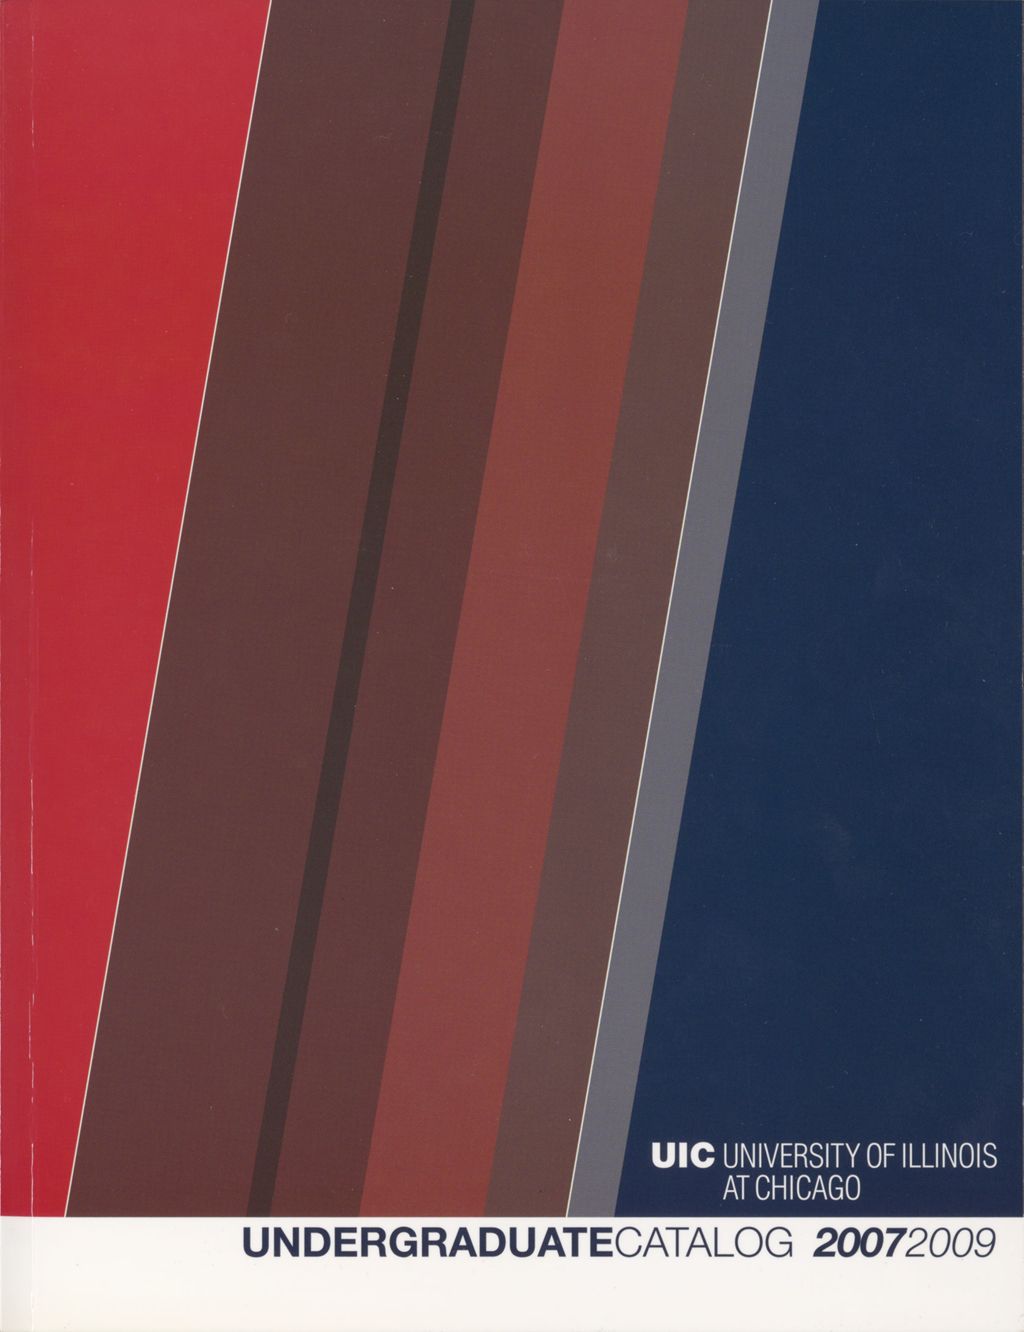 Miniature of Undergraduate Catalog, 2007-2009